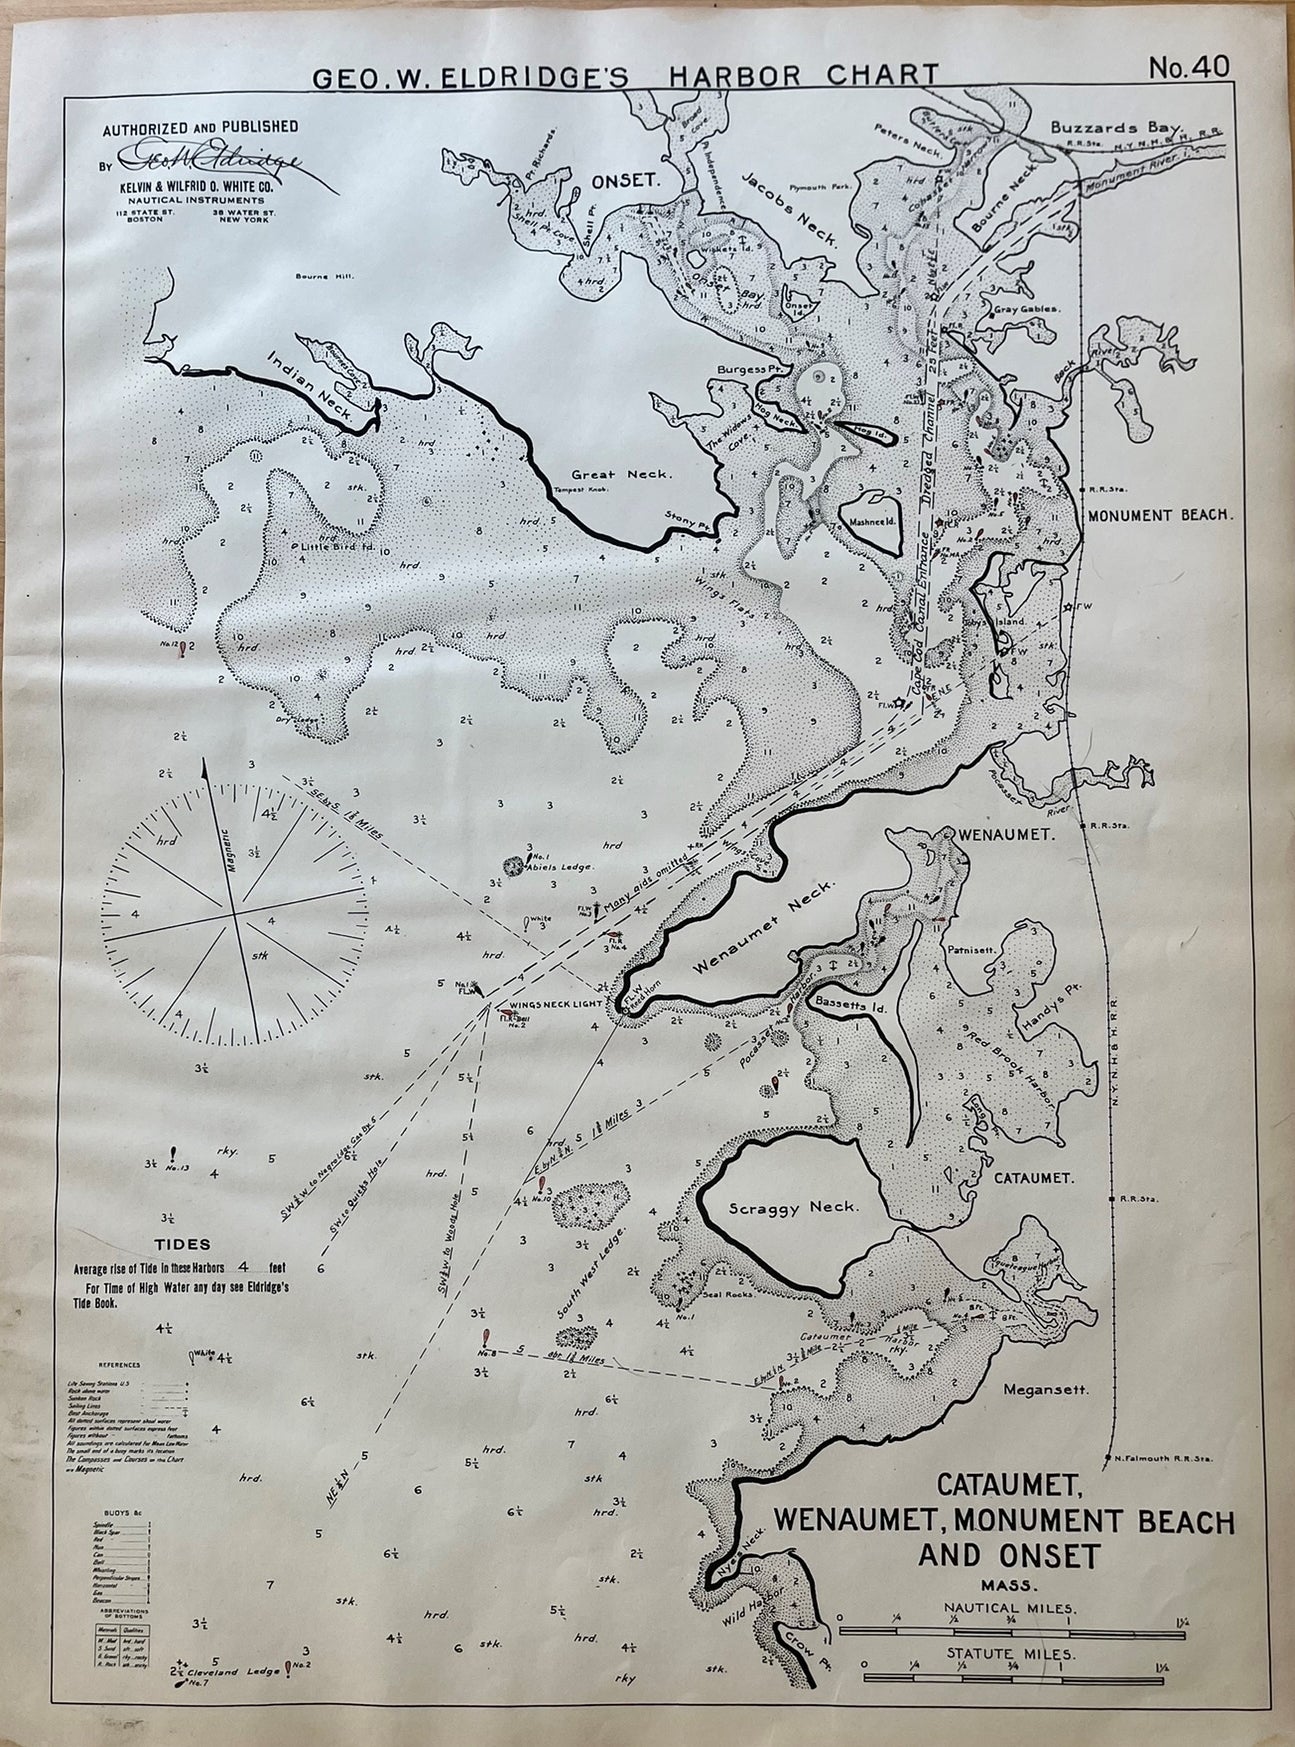 Antique-Map-Cataumet-Wenaumet-Monument-Beach-and-Onset-Mass.-Geo.-W.-Eldridge's-Harbor-Chart.-Massachusetts-1912-Maps-of-Antiquity